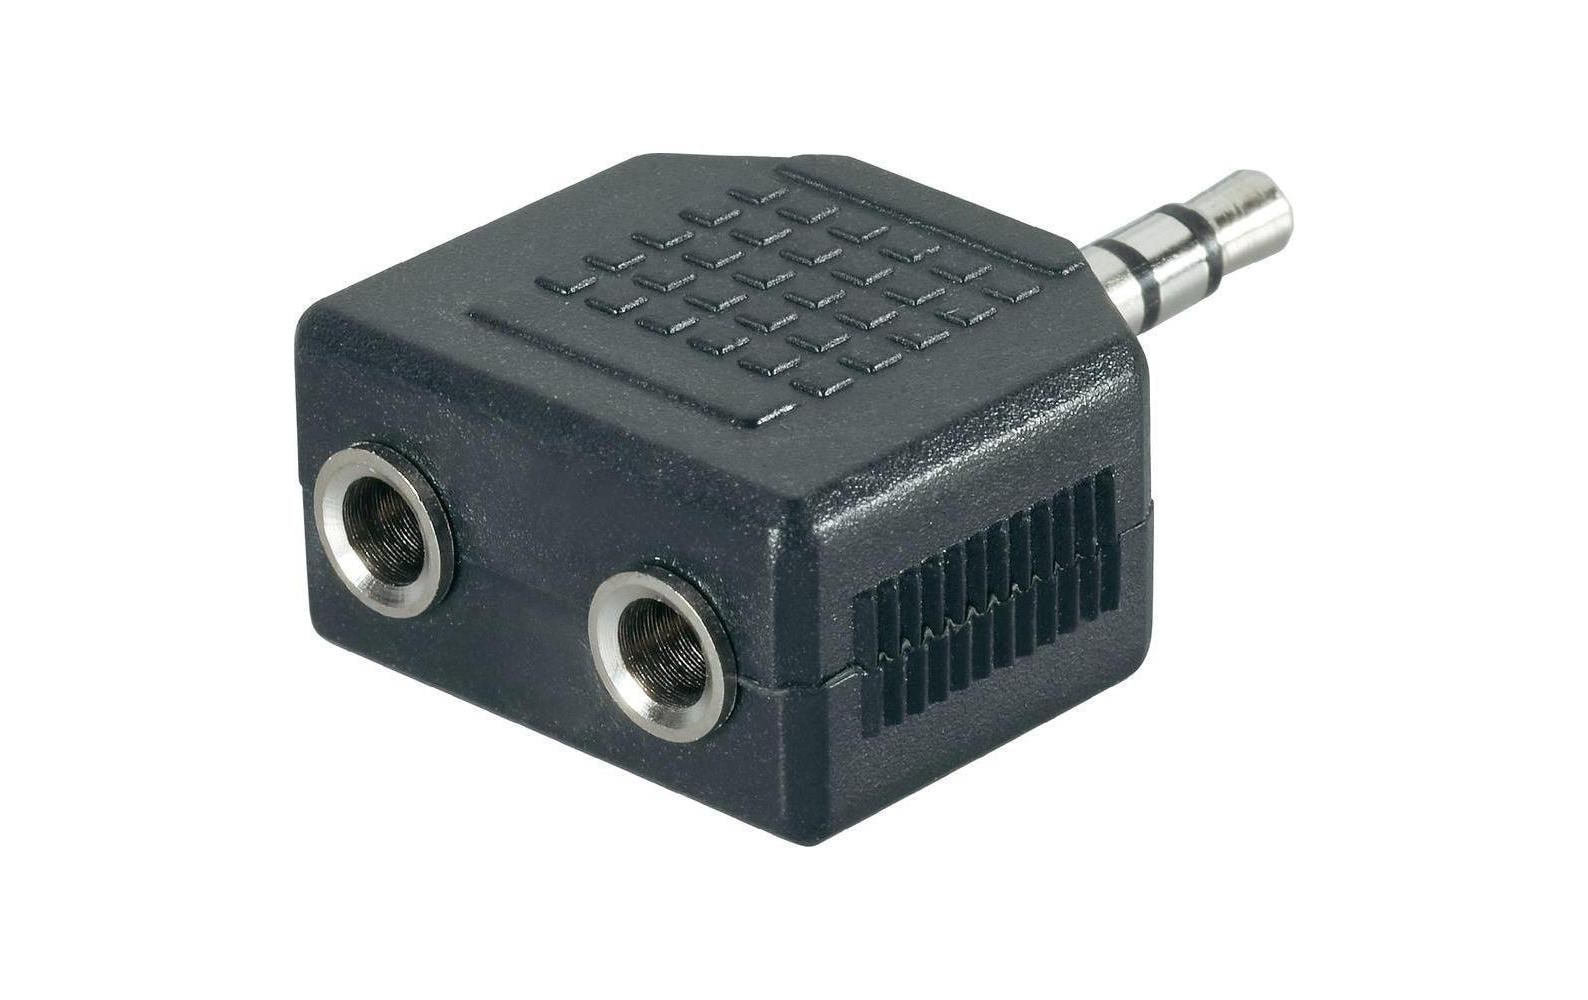 HDGear Audio-Adapter Klinke 3.5 mm, male - Klinke 3.5 mm, female